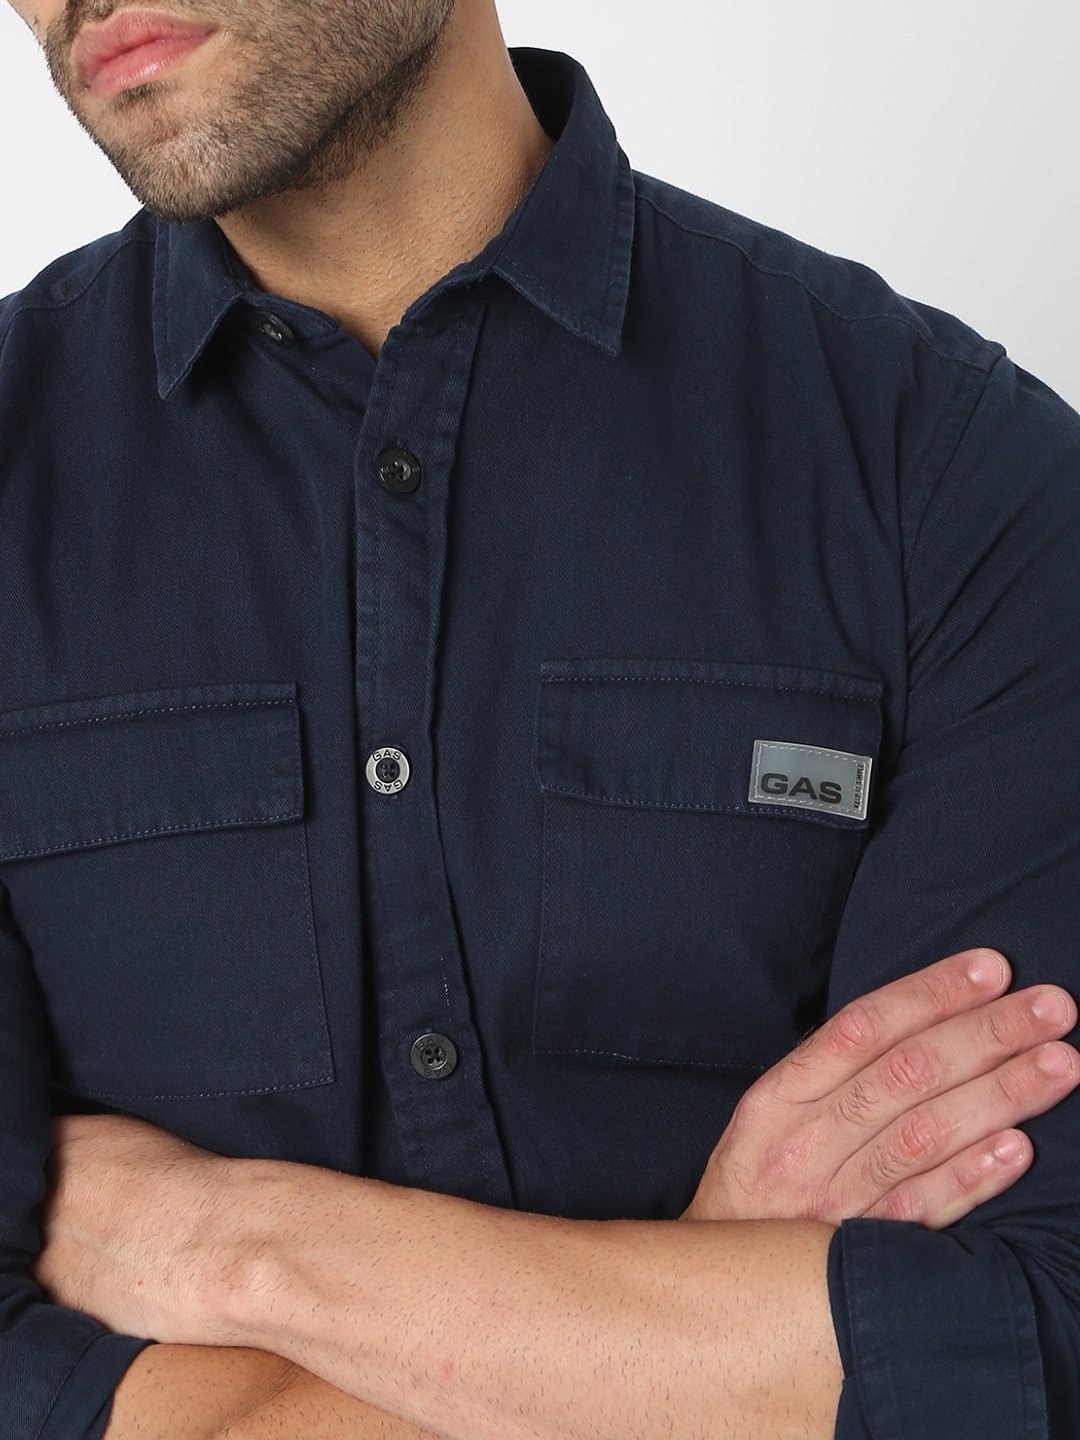 Vintage Mens Spring Summer Blue Denim Work Uniforms Loose Pullover Shirts  Jacket | eBay